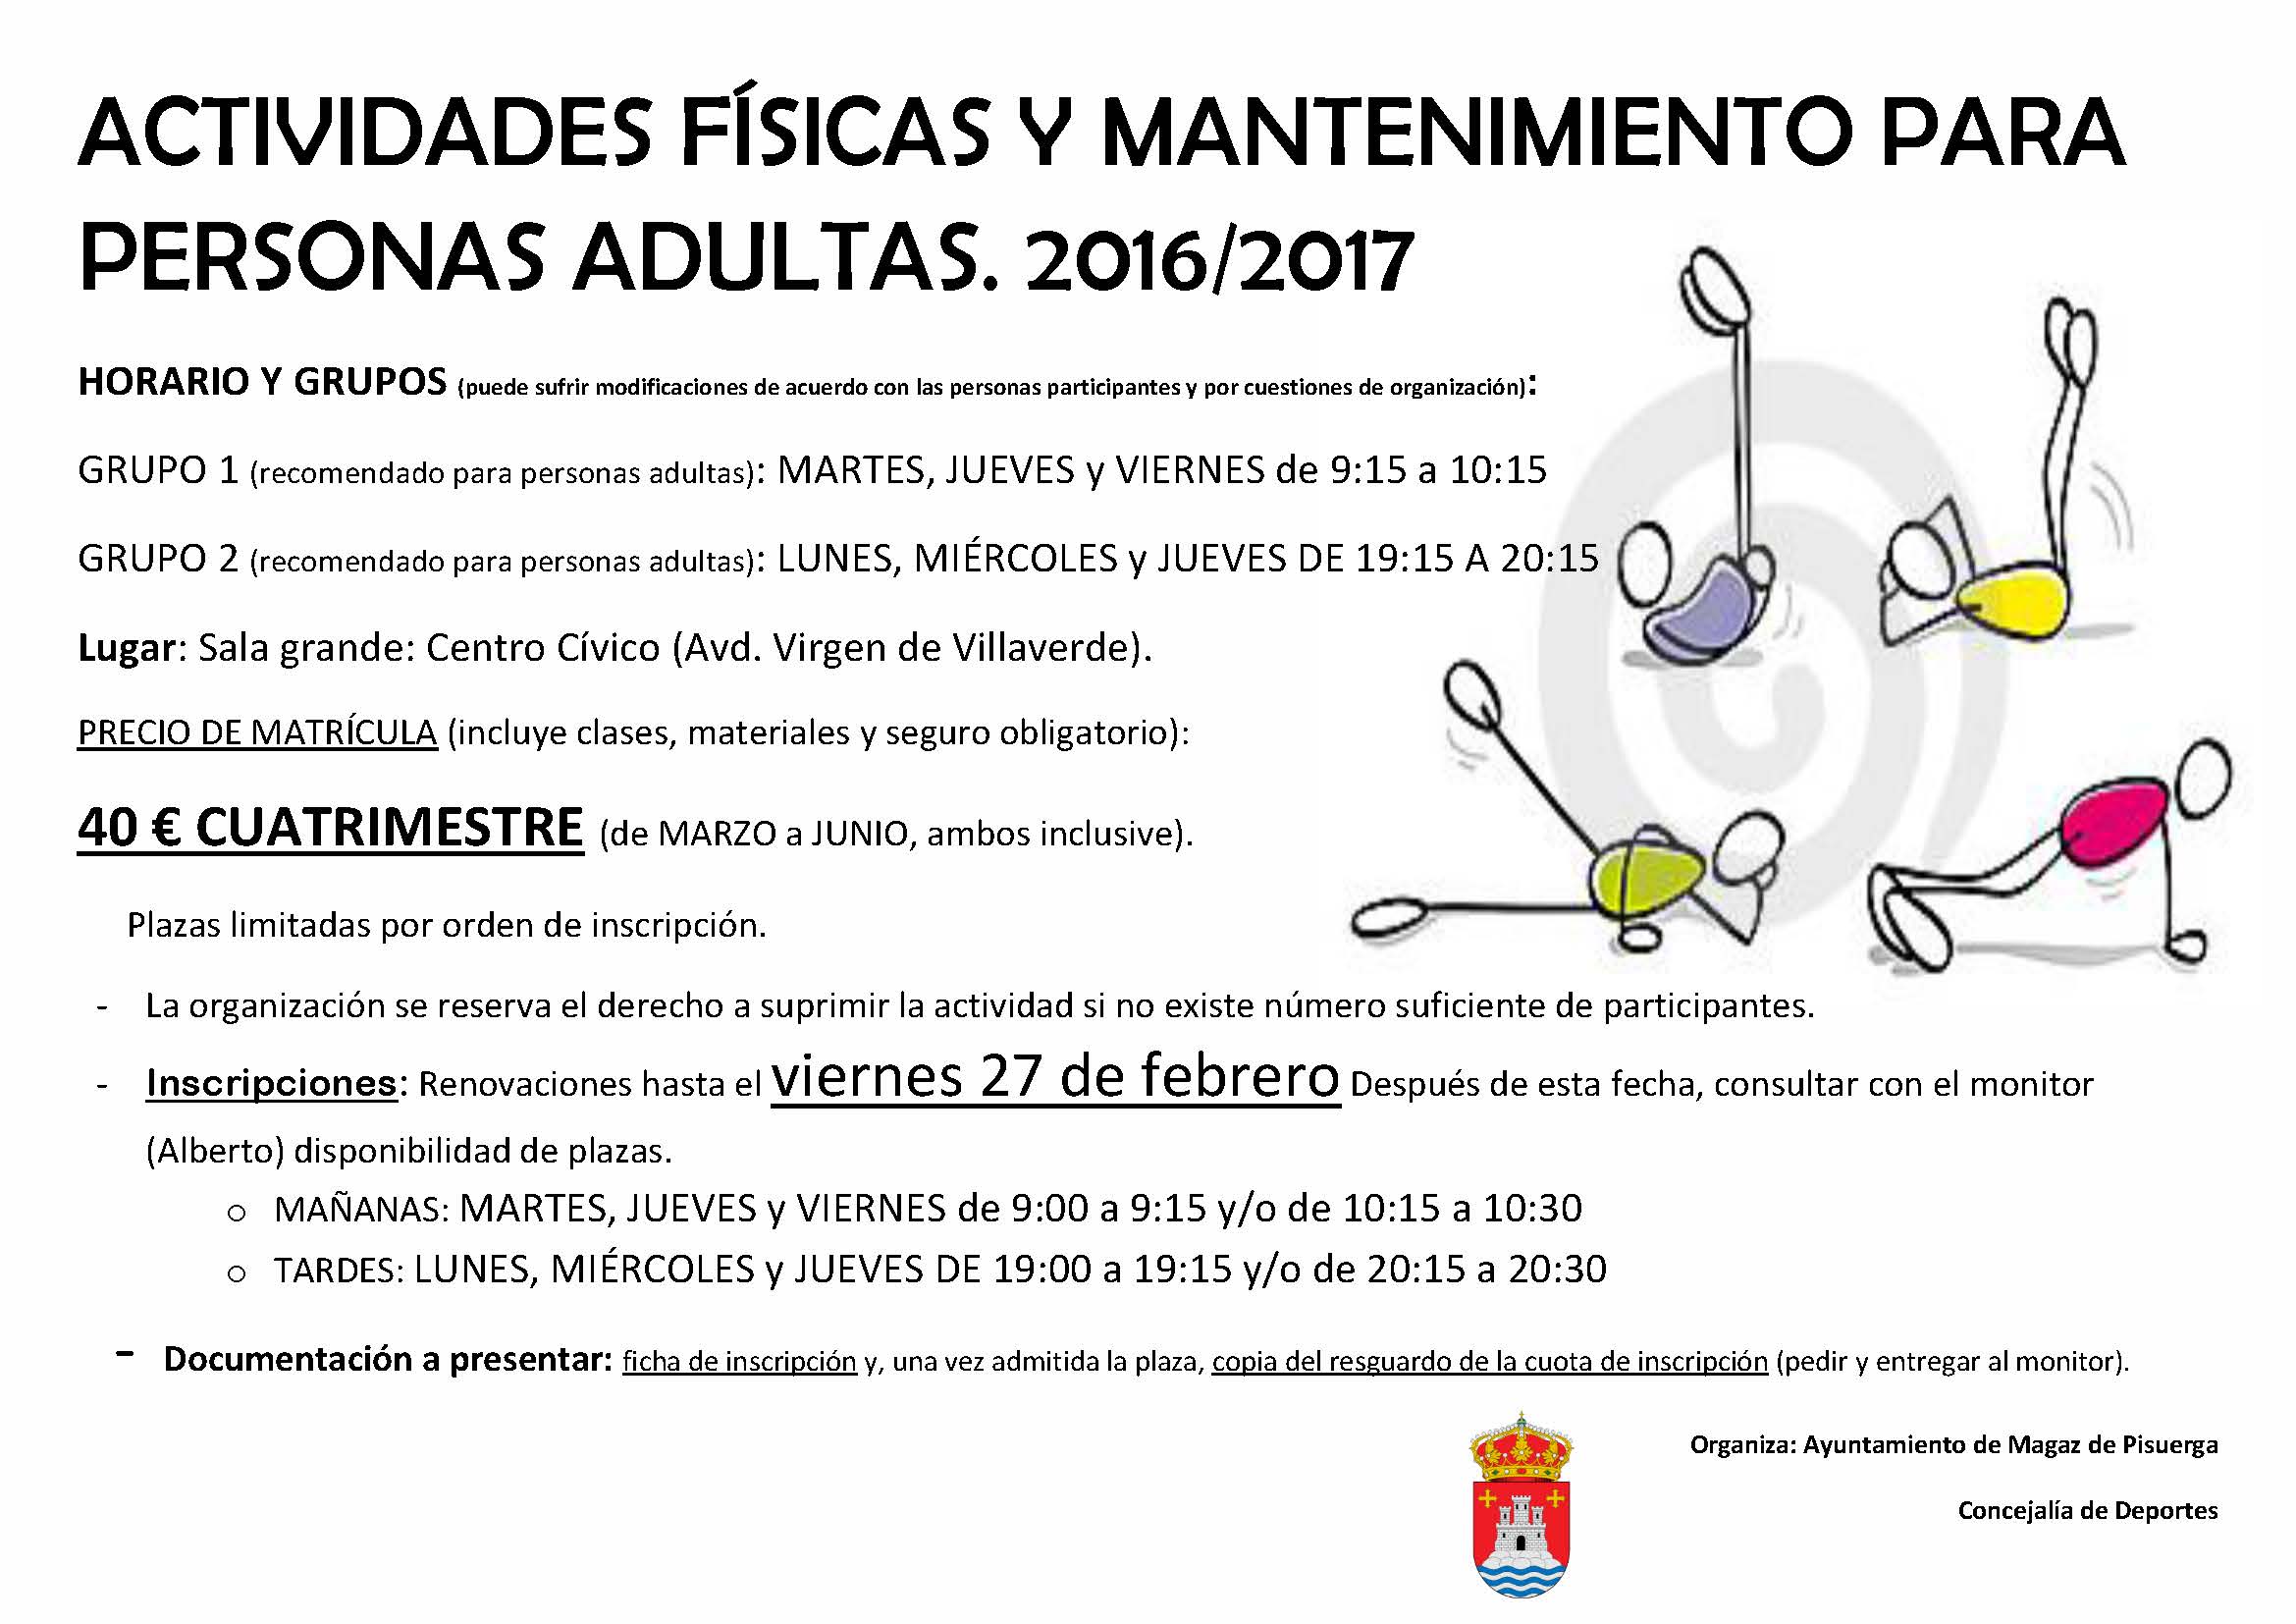 Actividades físicas y mantenimiento para personas adultas 2016/2017